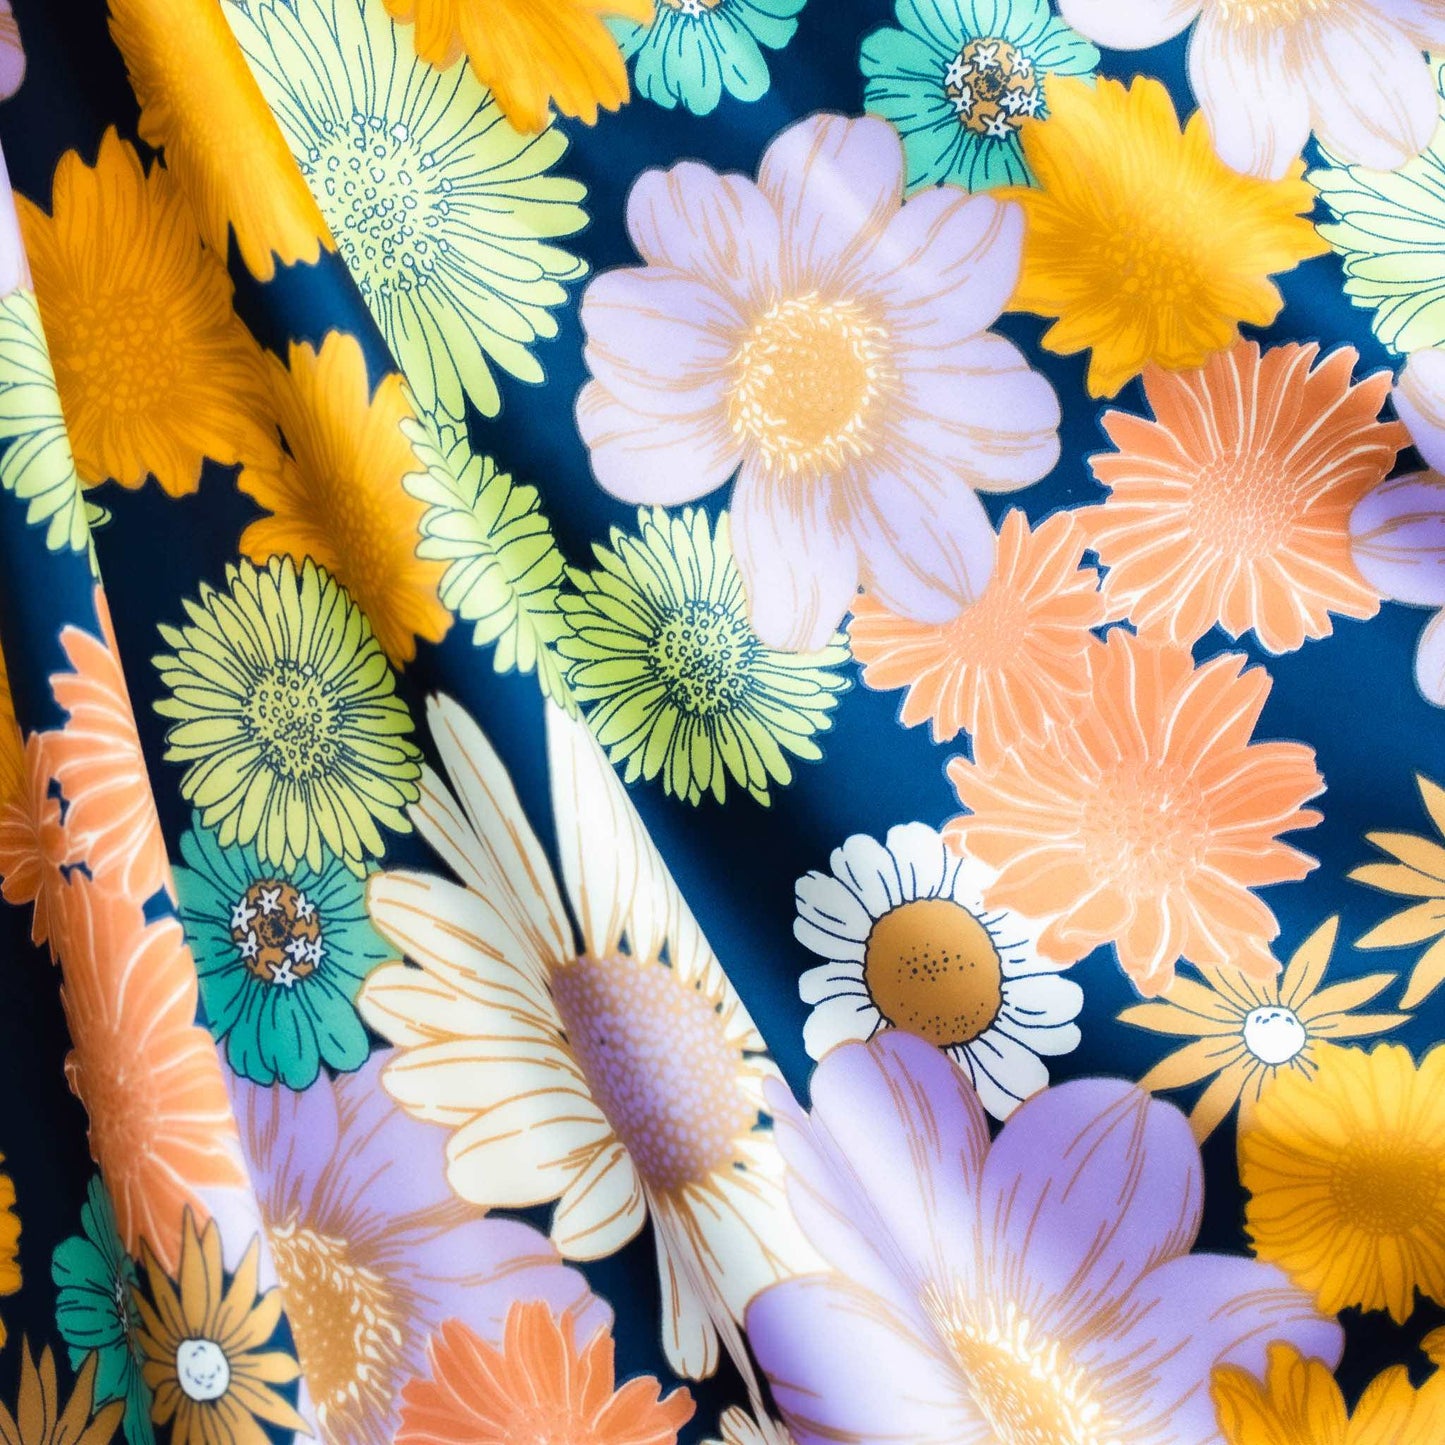 Eșarfă damă din satin cu imprimeu floral, 80 x 80 cm - Multicolor 